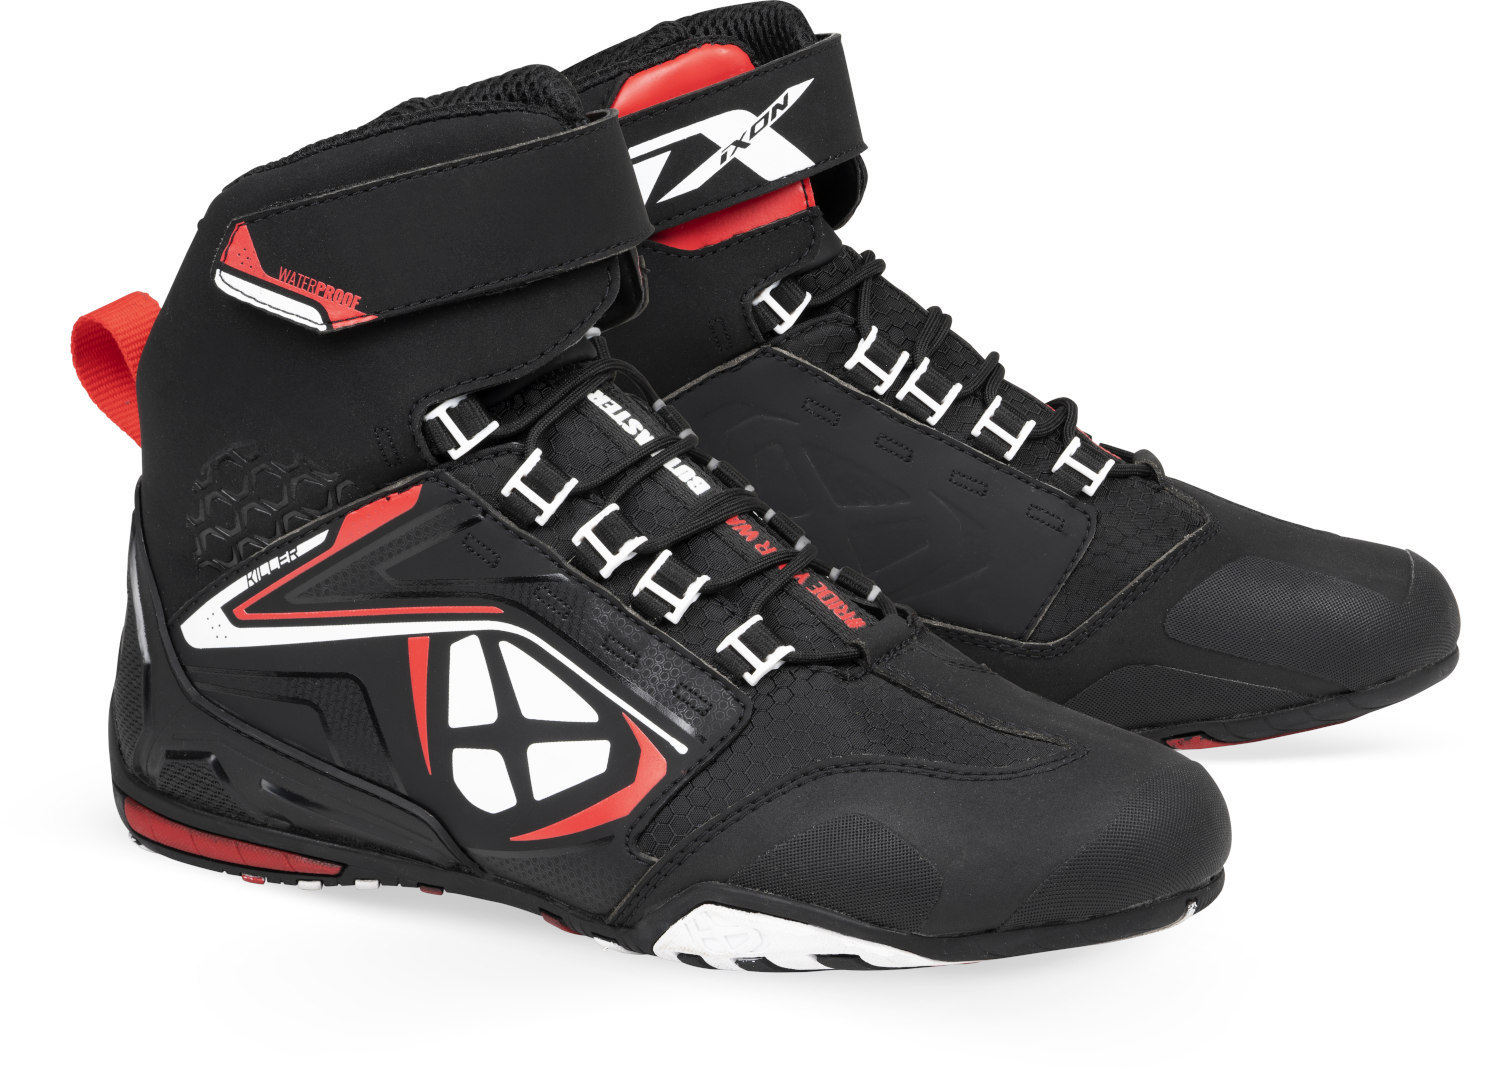 Ботинки Ixon Killer WP Мотоциклетные, черно-бело-красные ботинки женские черно красные